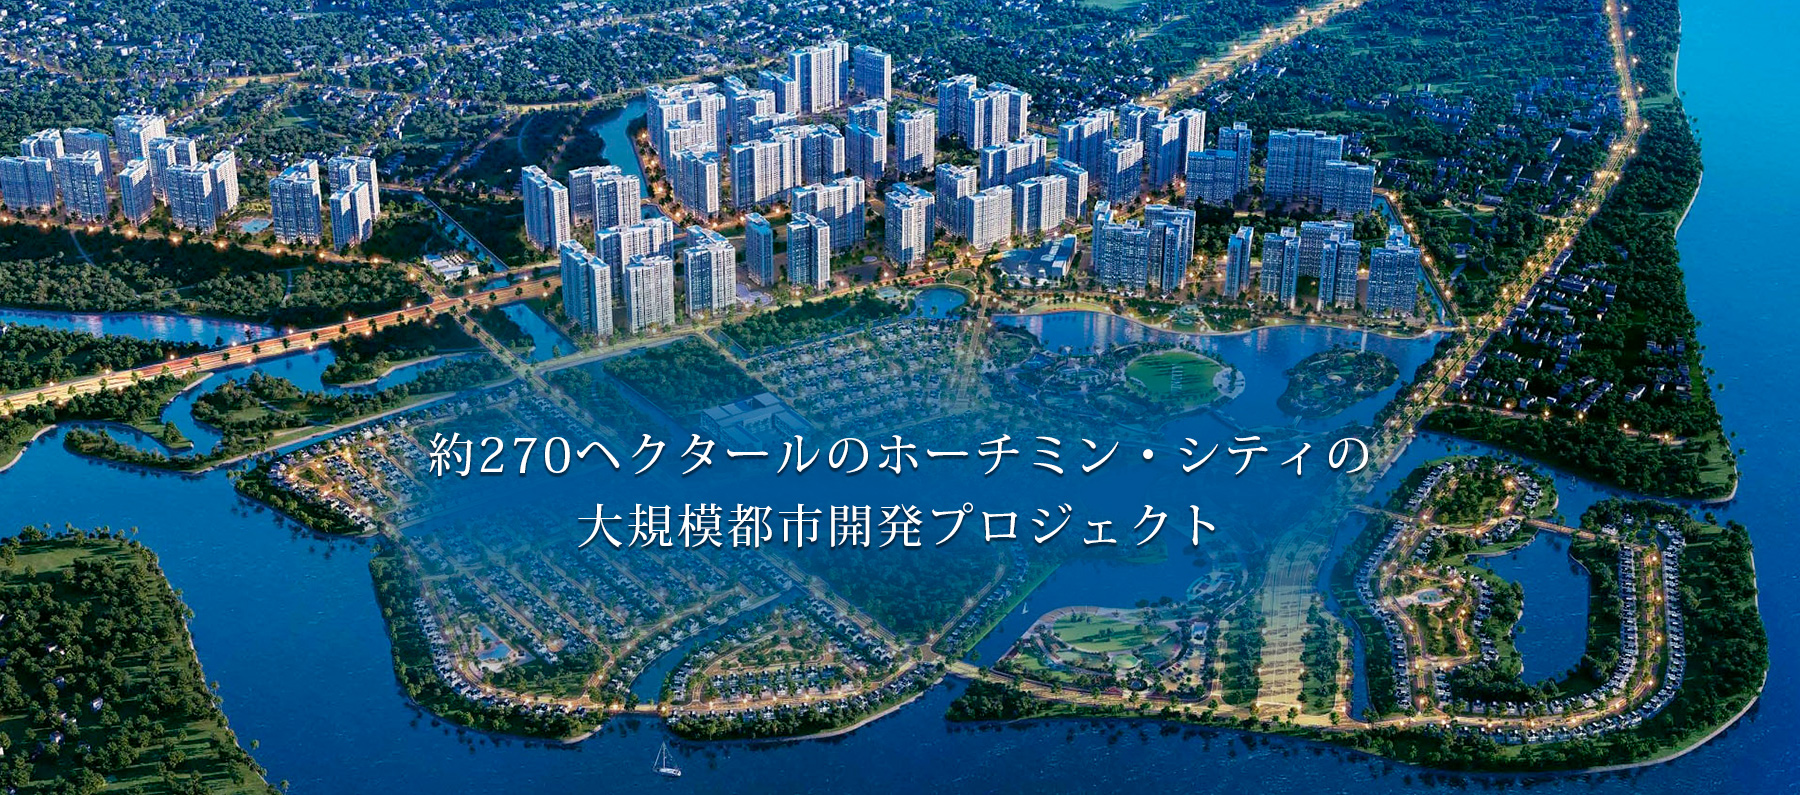 約270ヘクタールのホーチミン・シティの大規模都市開発プロジェクト